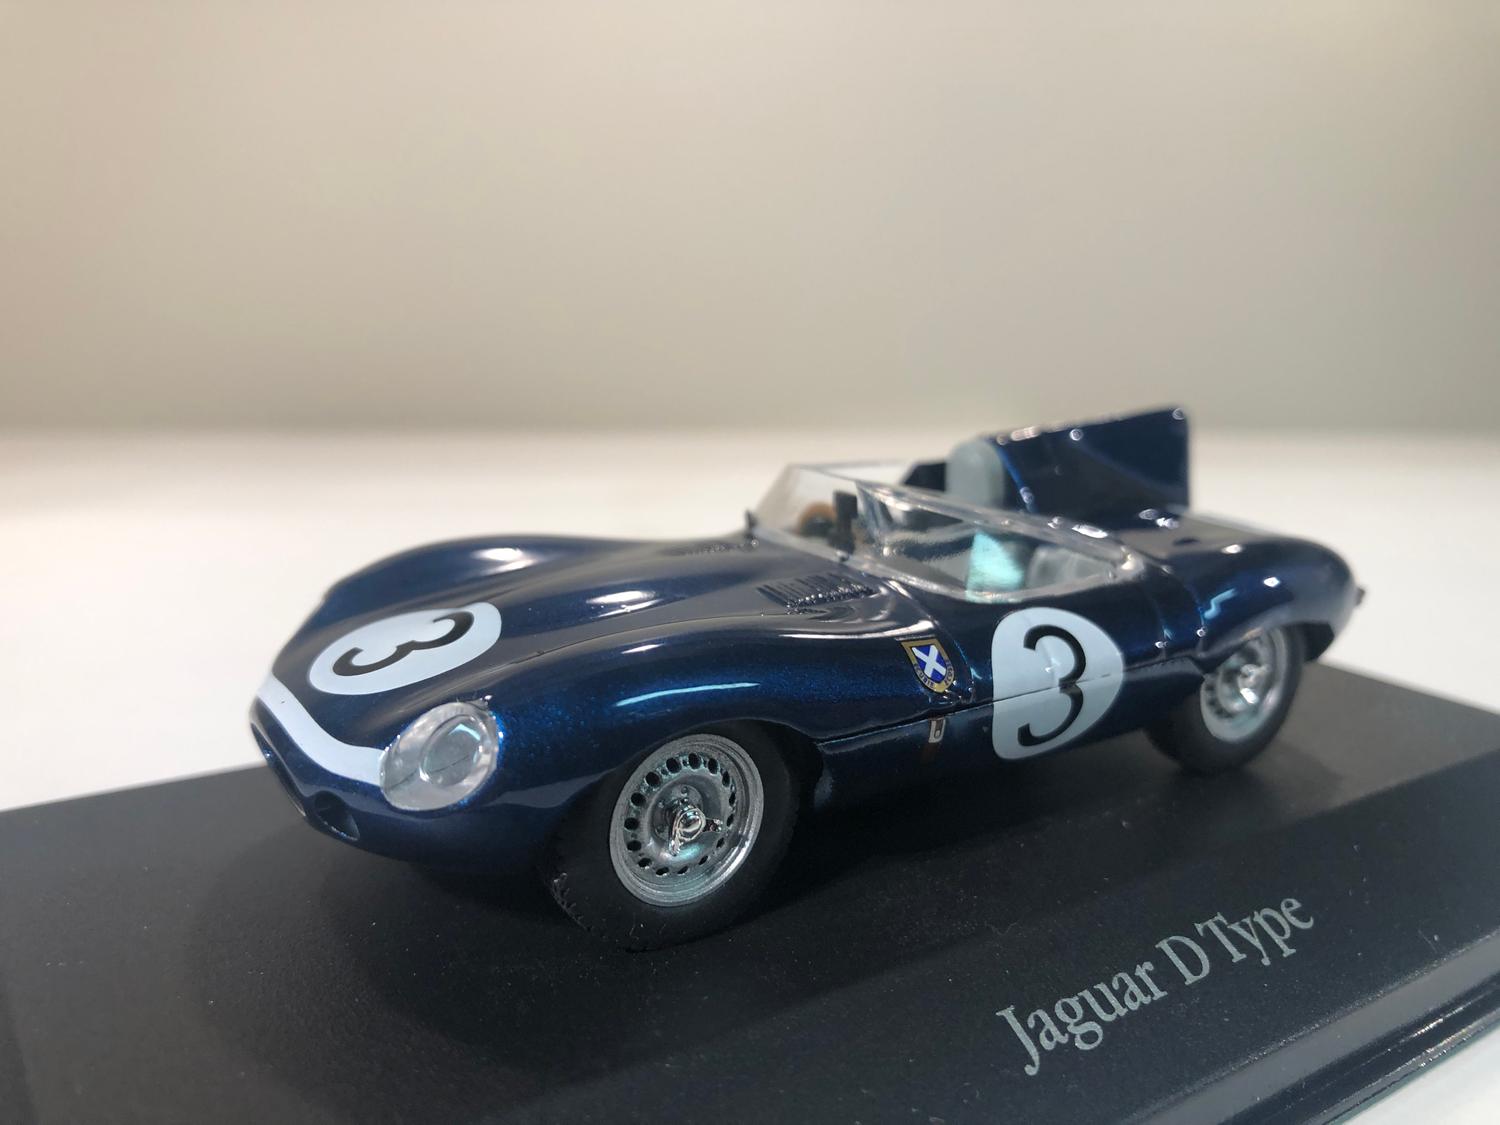 Skala 1/43 Jaguar D-type #3 från IXO models / Atlas